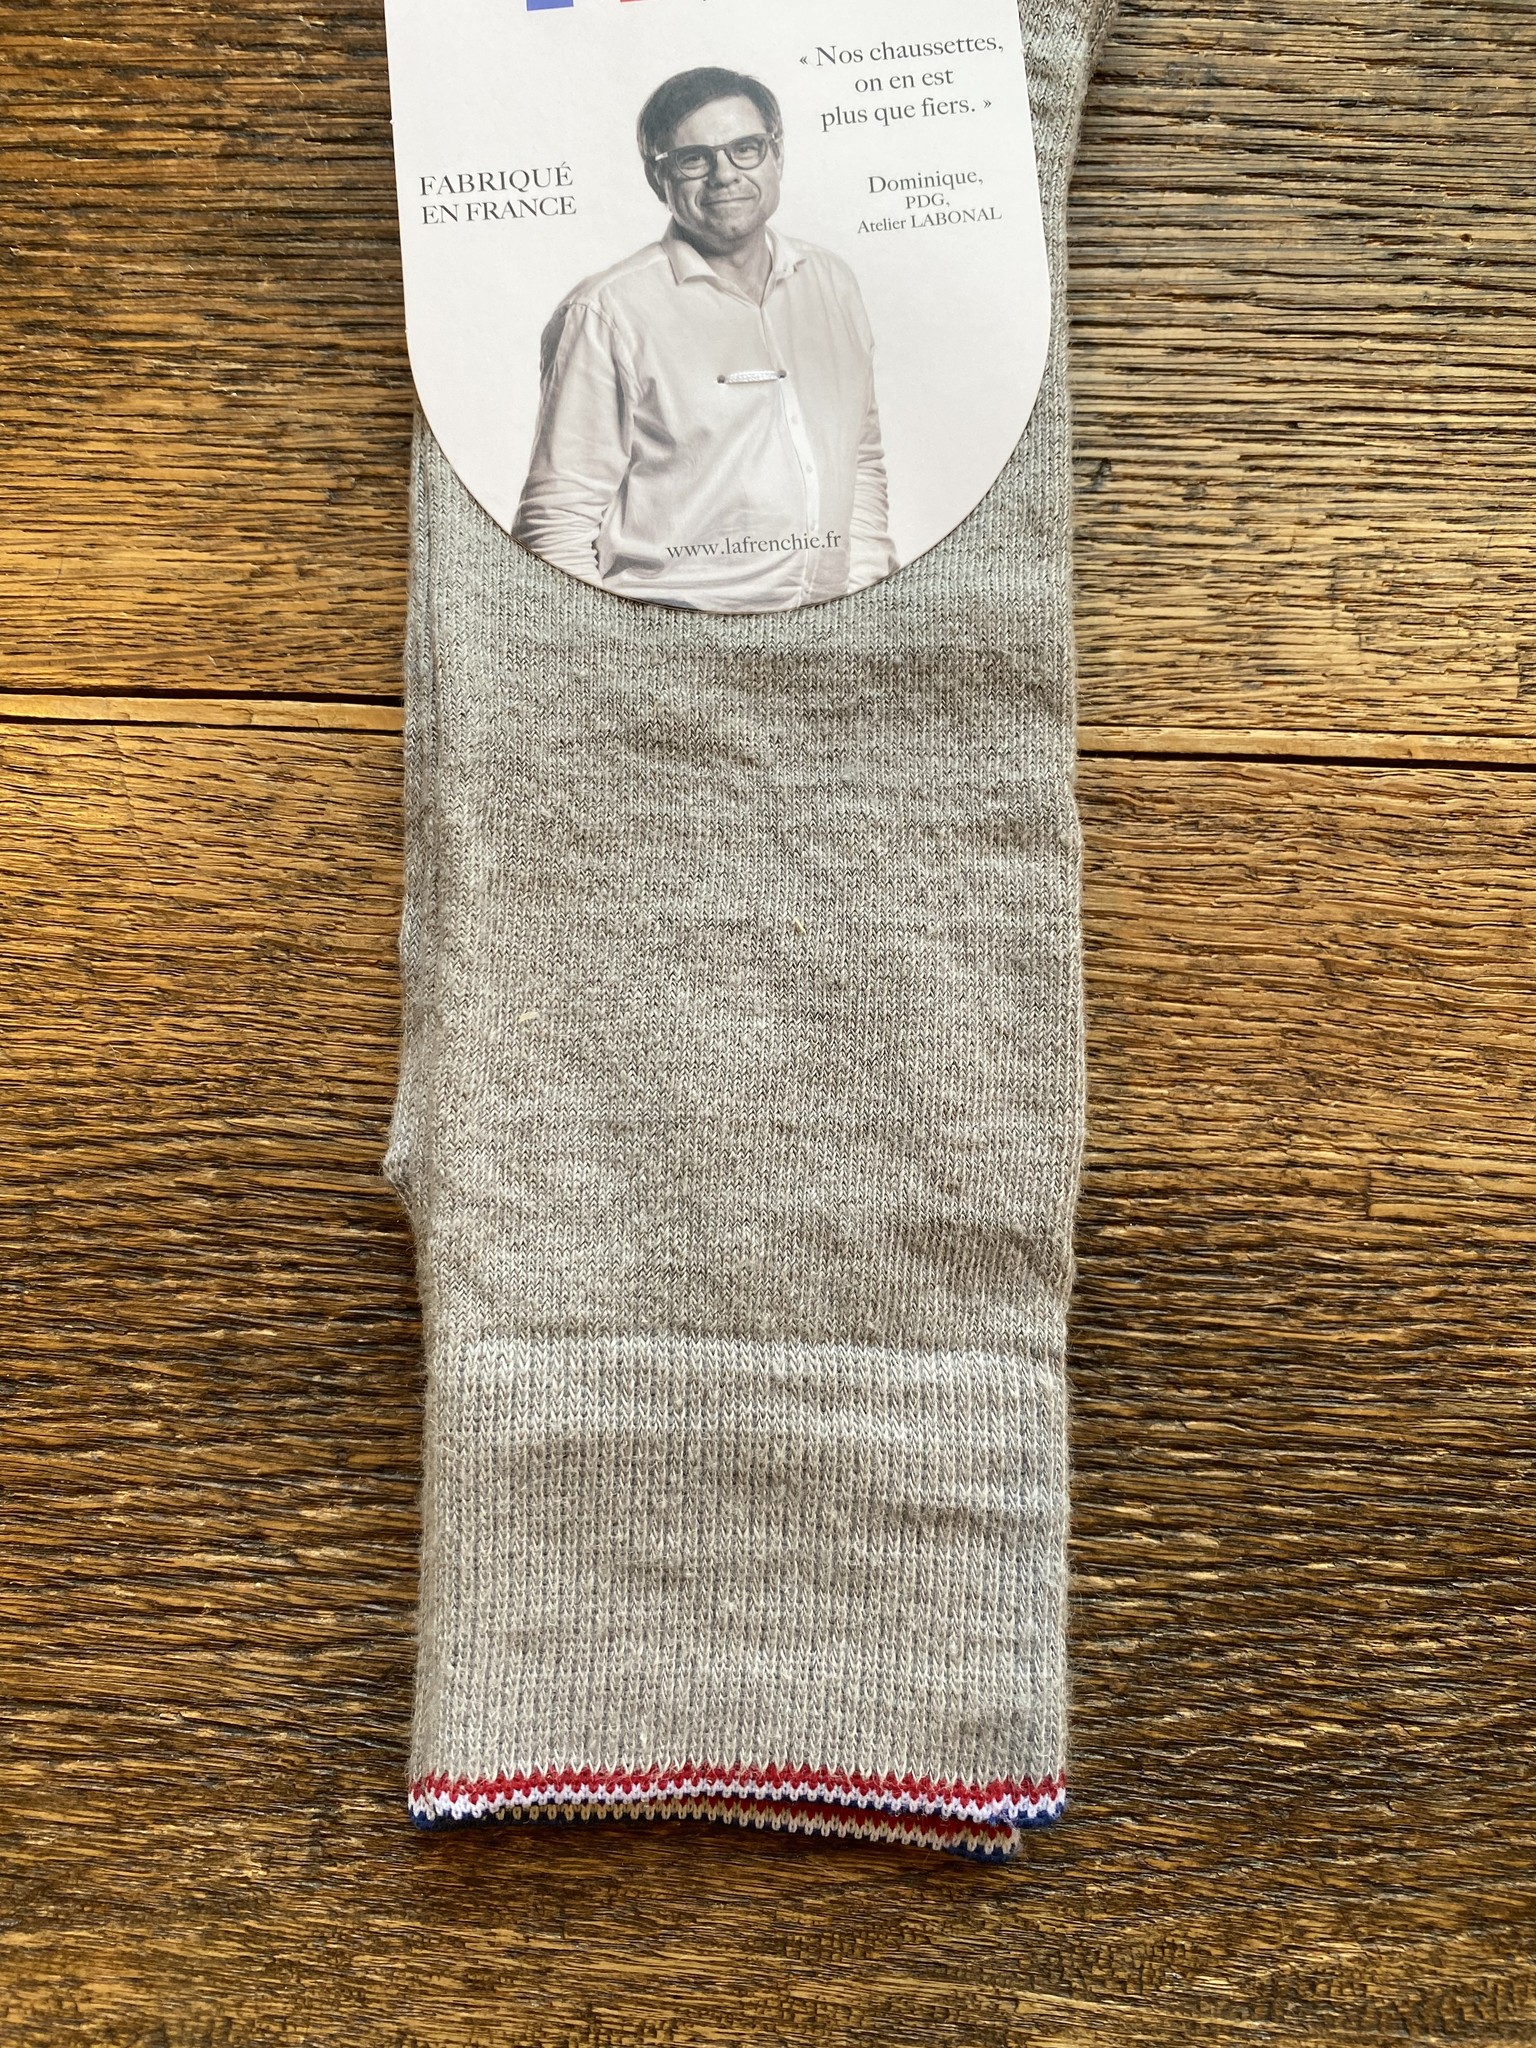 Men's high linen socks from La Frenchie